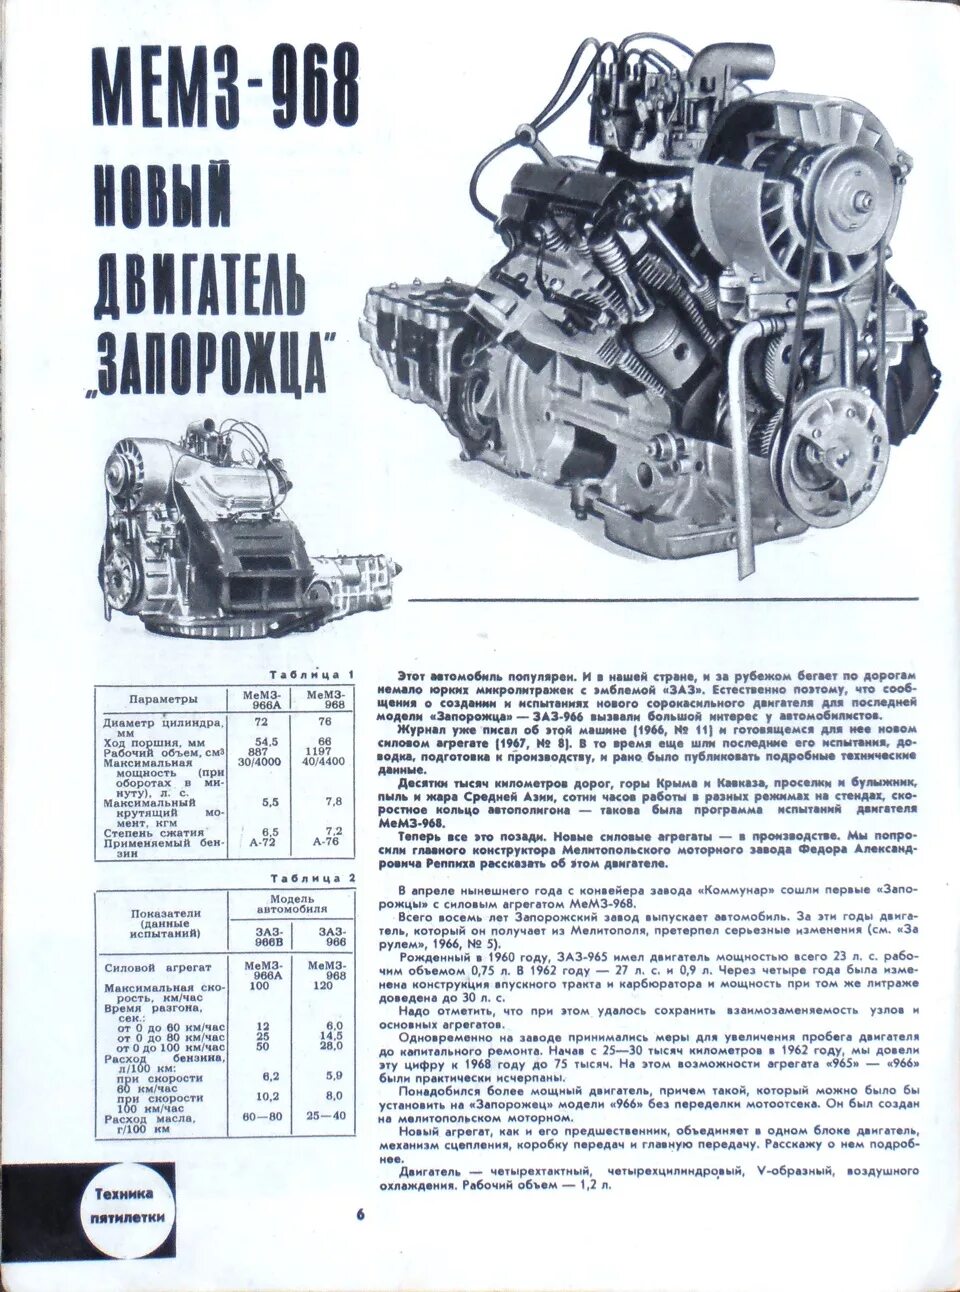 Двигатель ЗАЗ 968м технические характеристики. Мотор ЗАЗ 968м характеристики. ЗАЗ 968 двигатель характеристики. Двигатель МЕМЗ 968 технические характеристики.